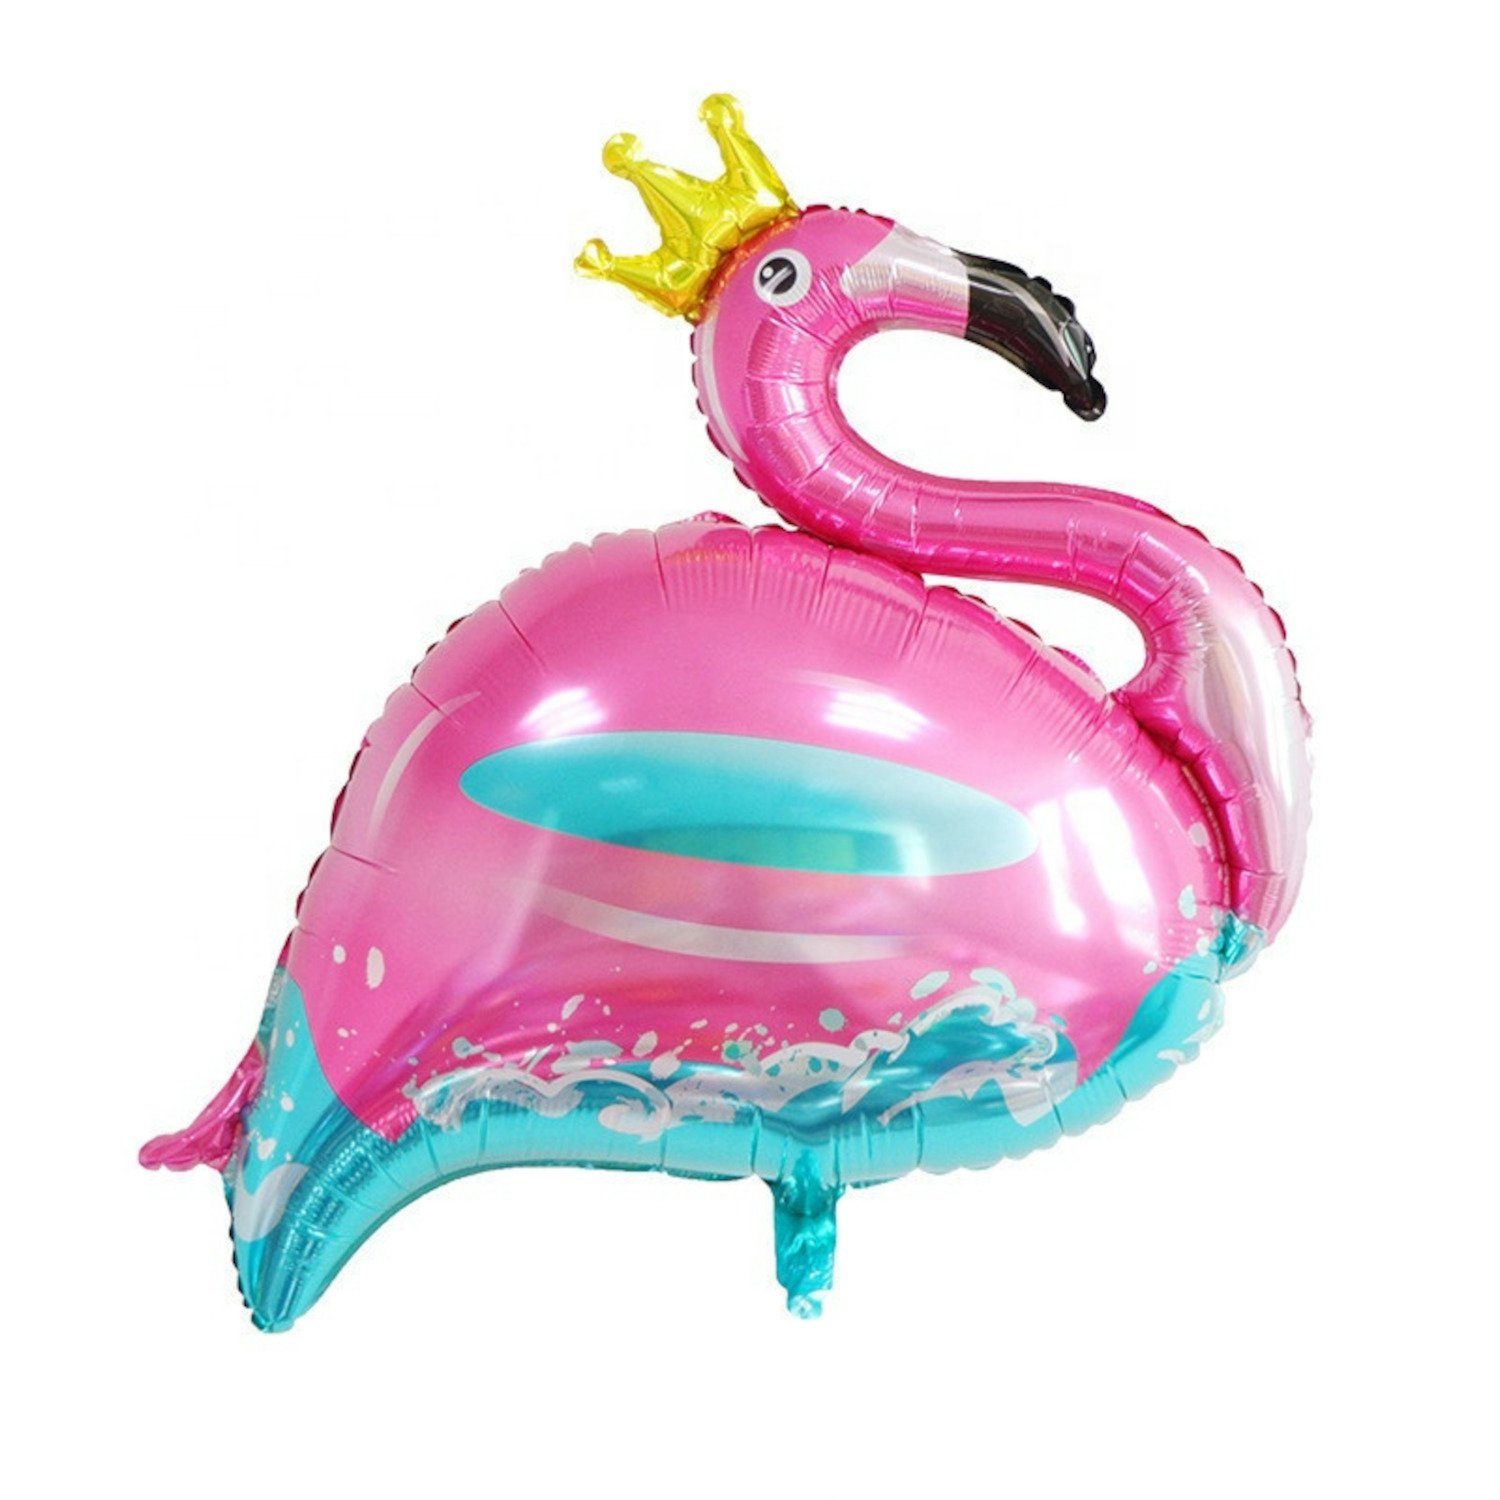 Kopper-24 Folienballon Folienballon Flamingo mit Krone blau pink, 100 x 80 cm